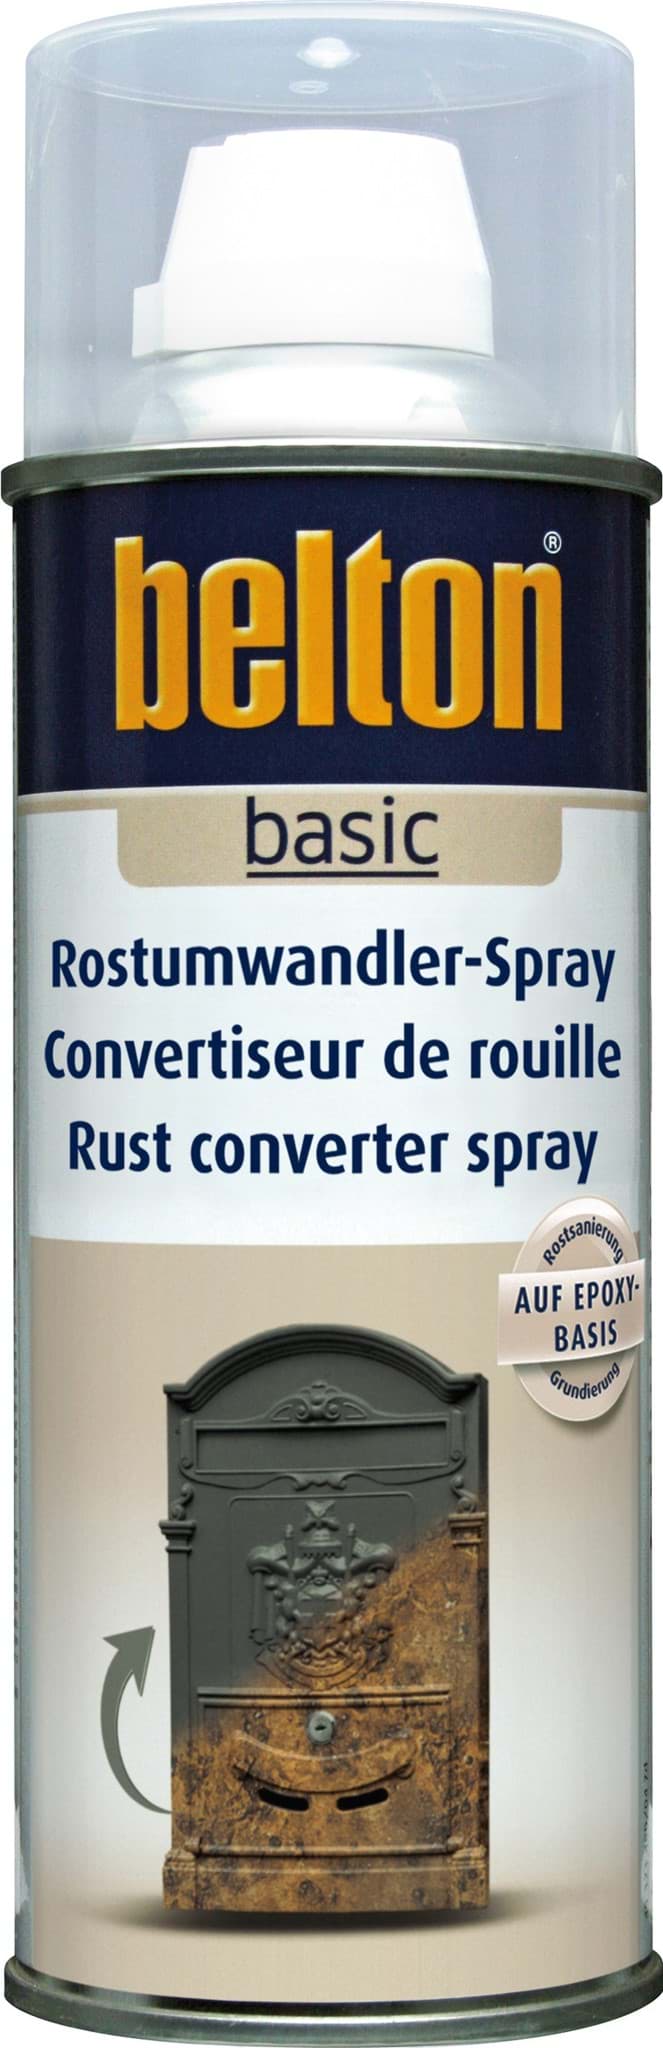 Obraz Belton basic Rostumwandler - Spray